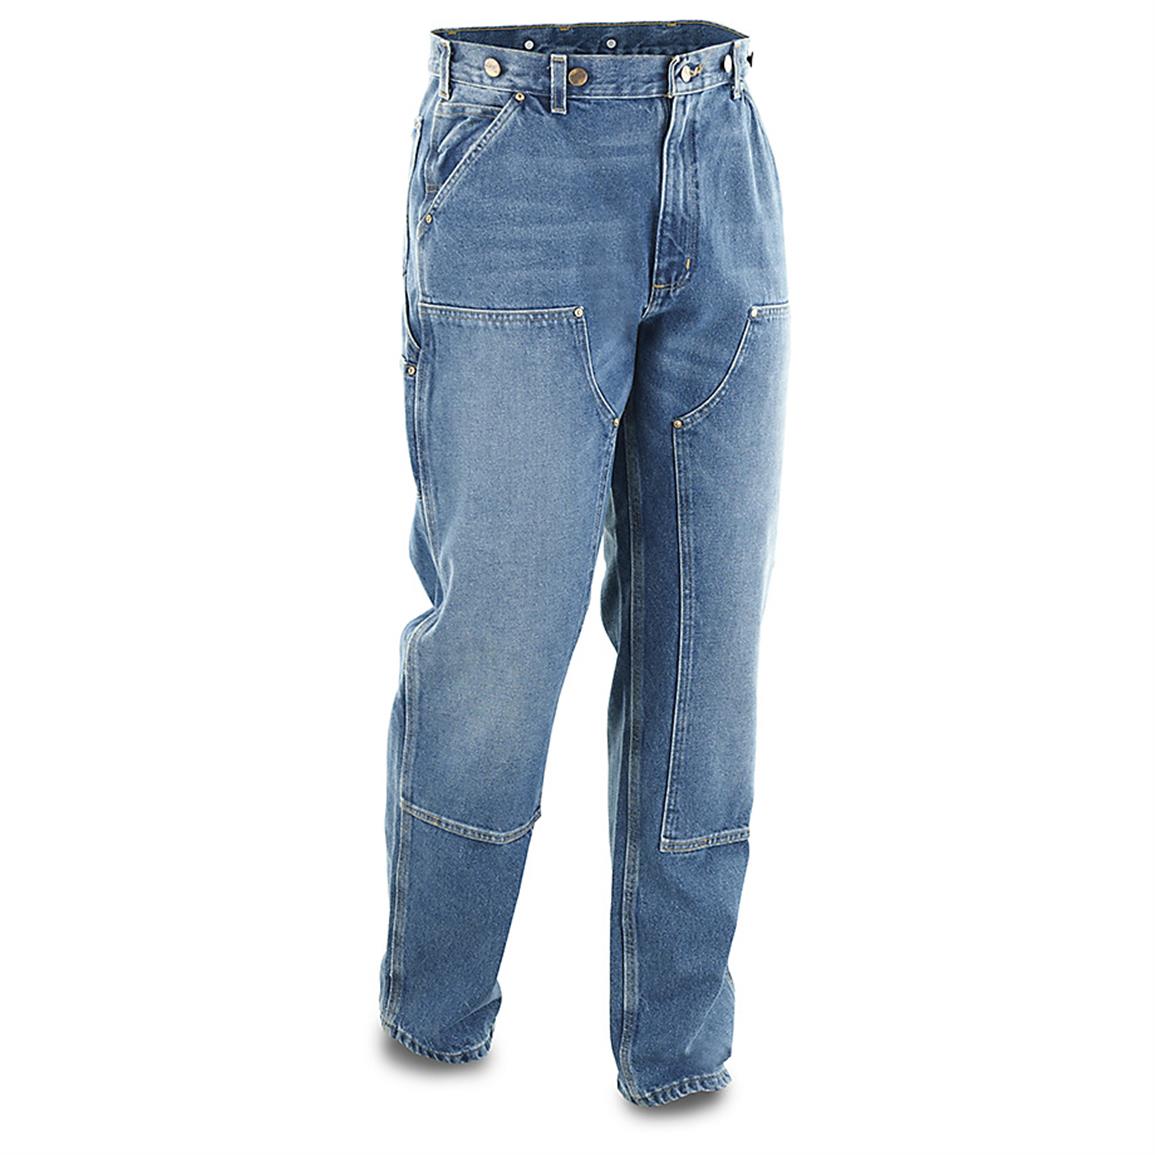 men's carhartt double knee jeans